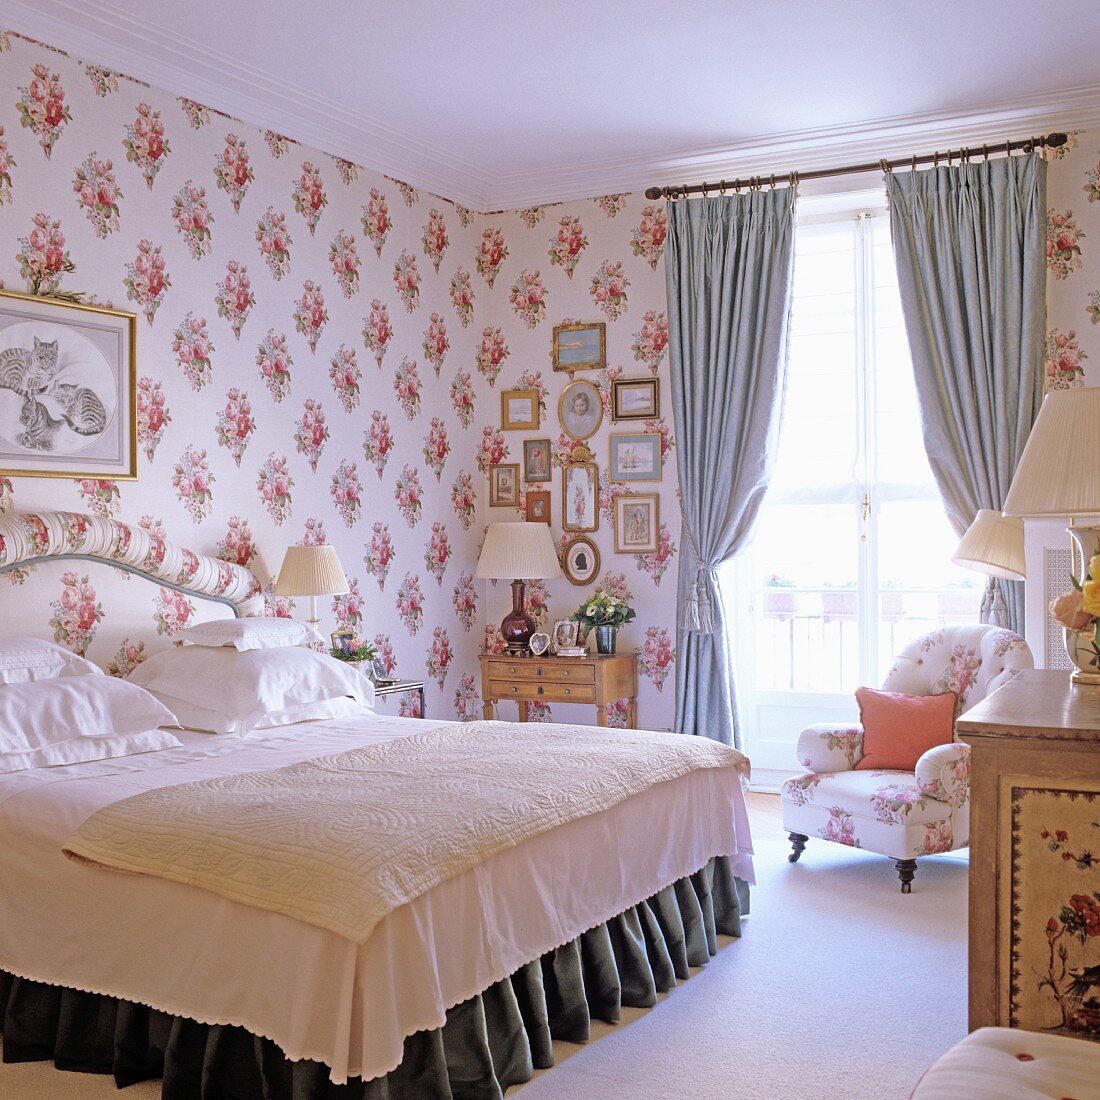 Schlafzimmer mit stoffbezogenen Wänden, Doppelbett & Polstersessel vor Fenster mit Vorhängen